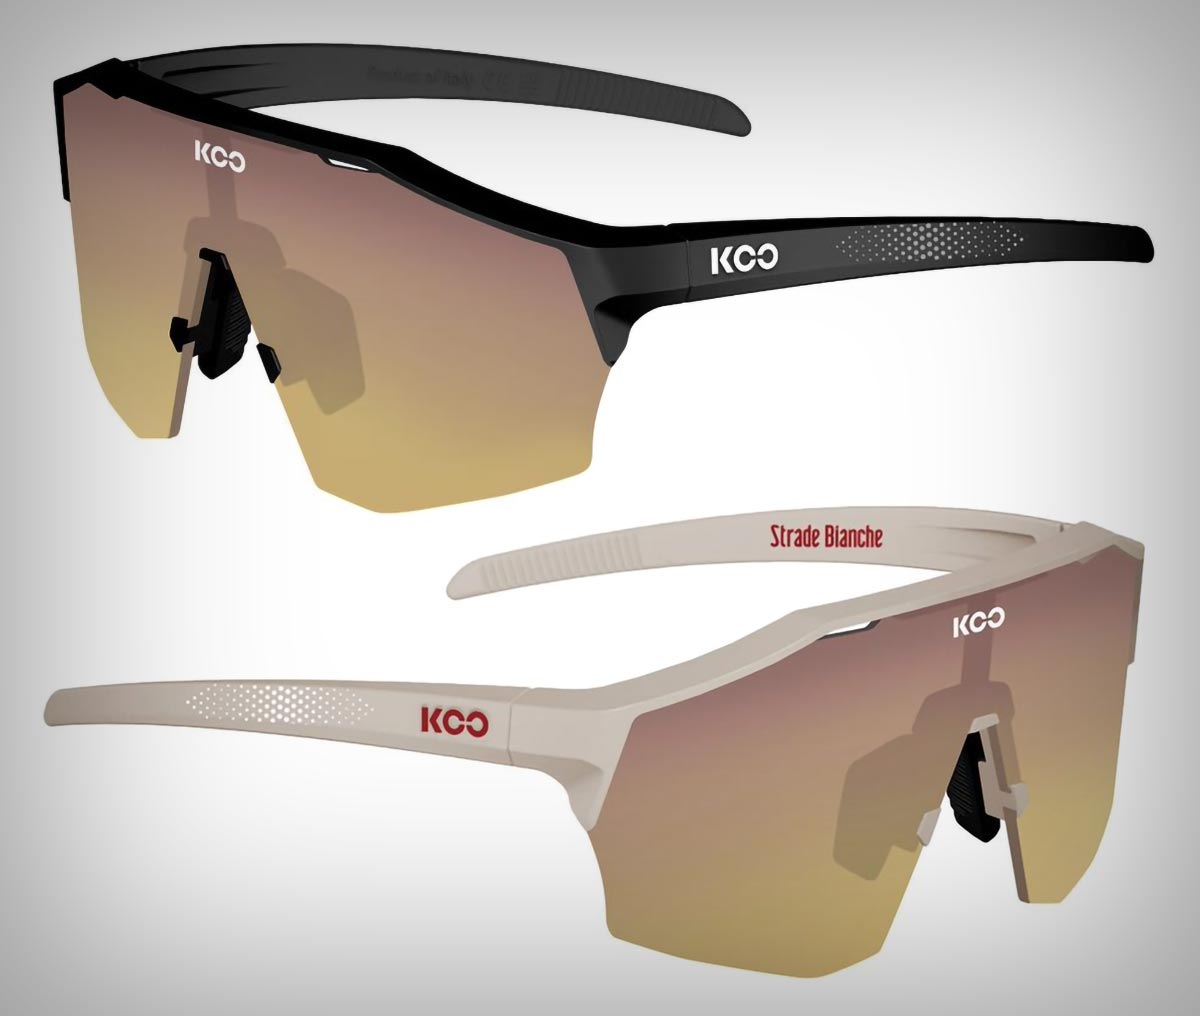 KOO Eyewear presenta las gafas Alibi en edición Strade Bianche